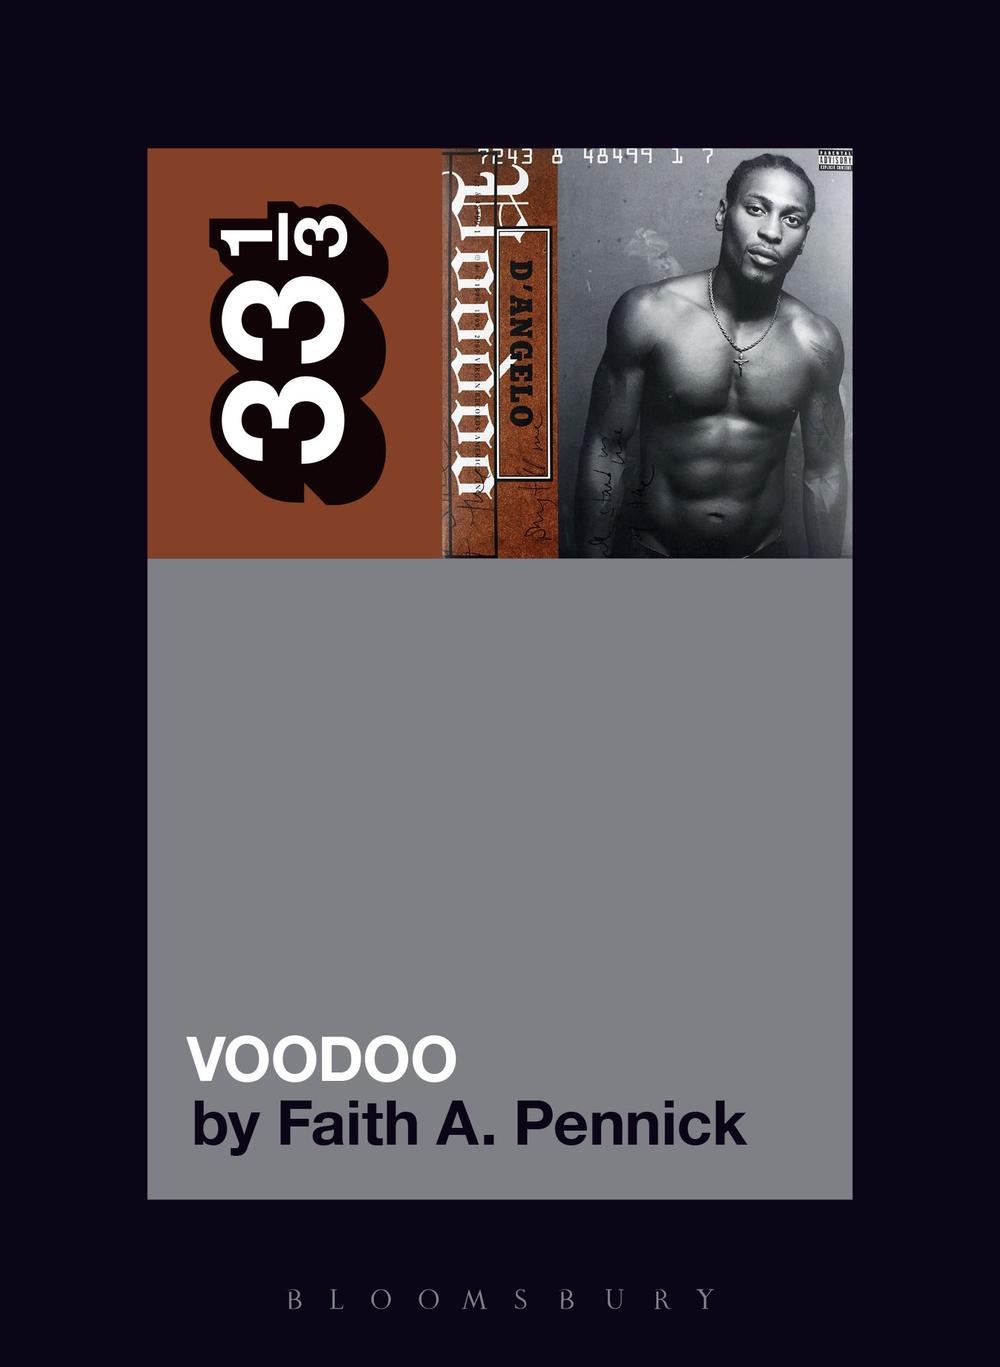 D'Angelo's Voodoo - Faith A Pennick